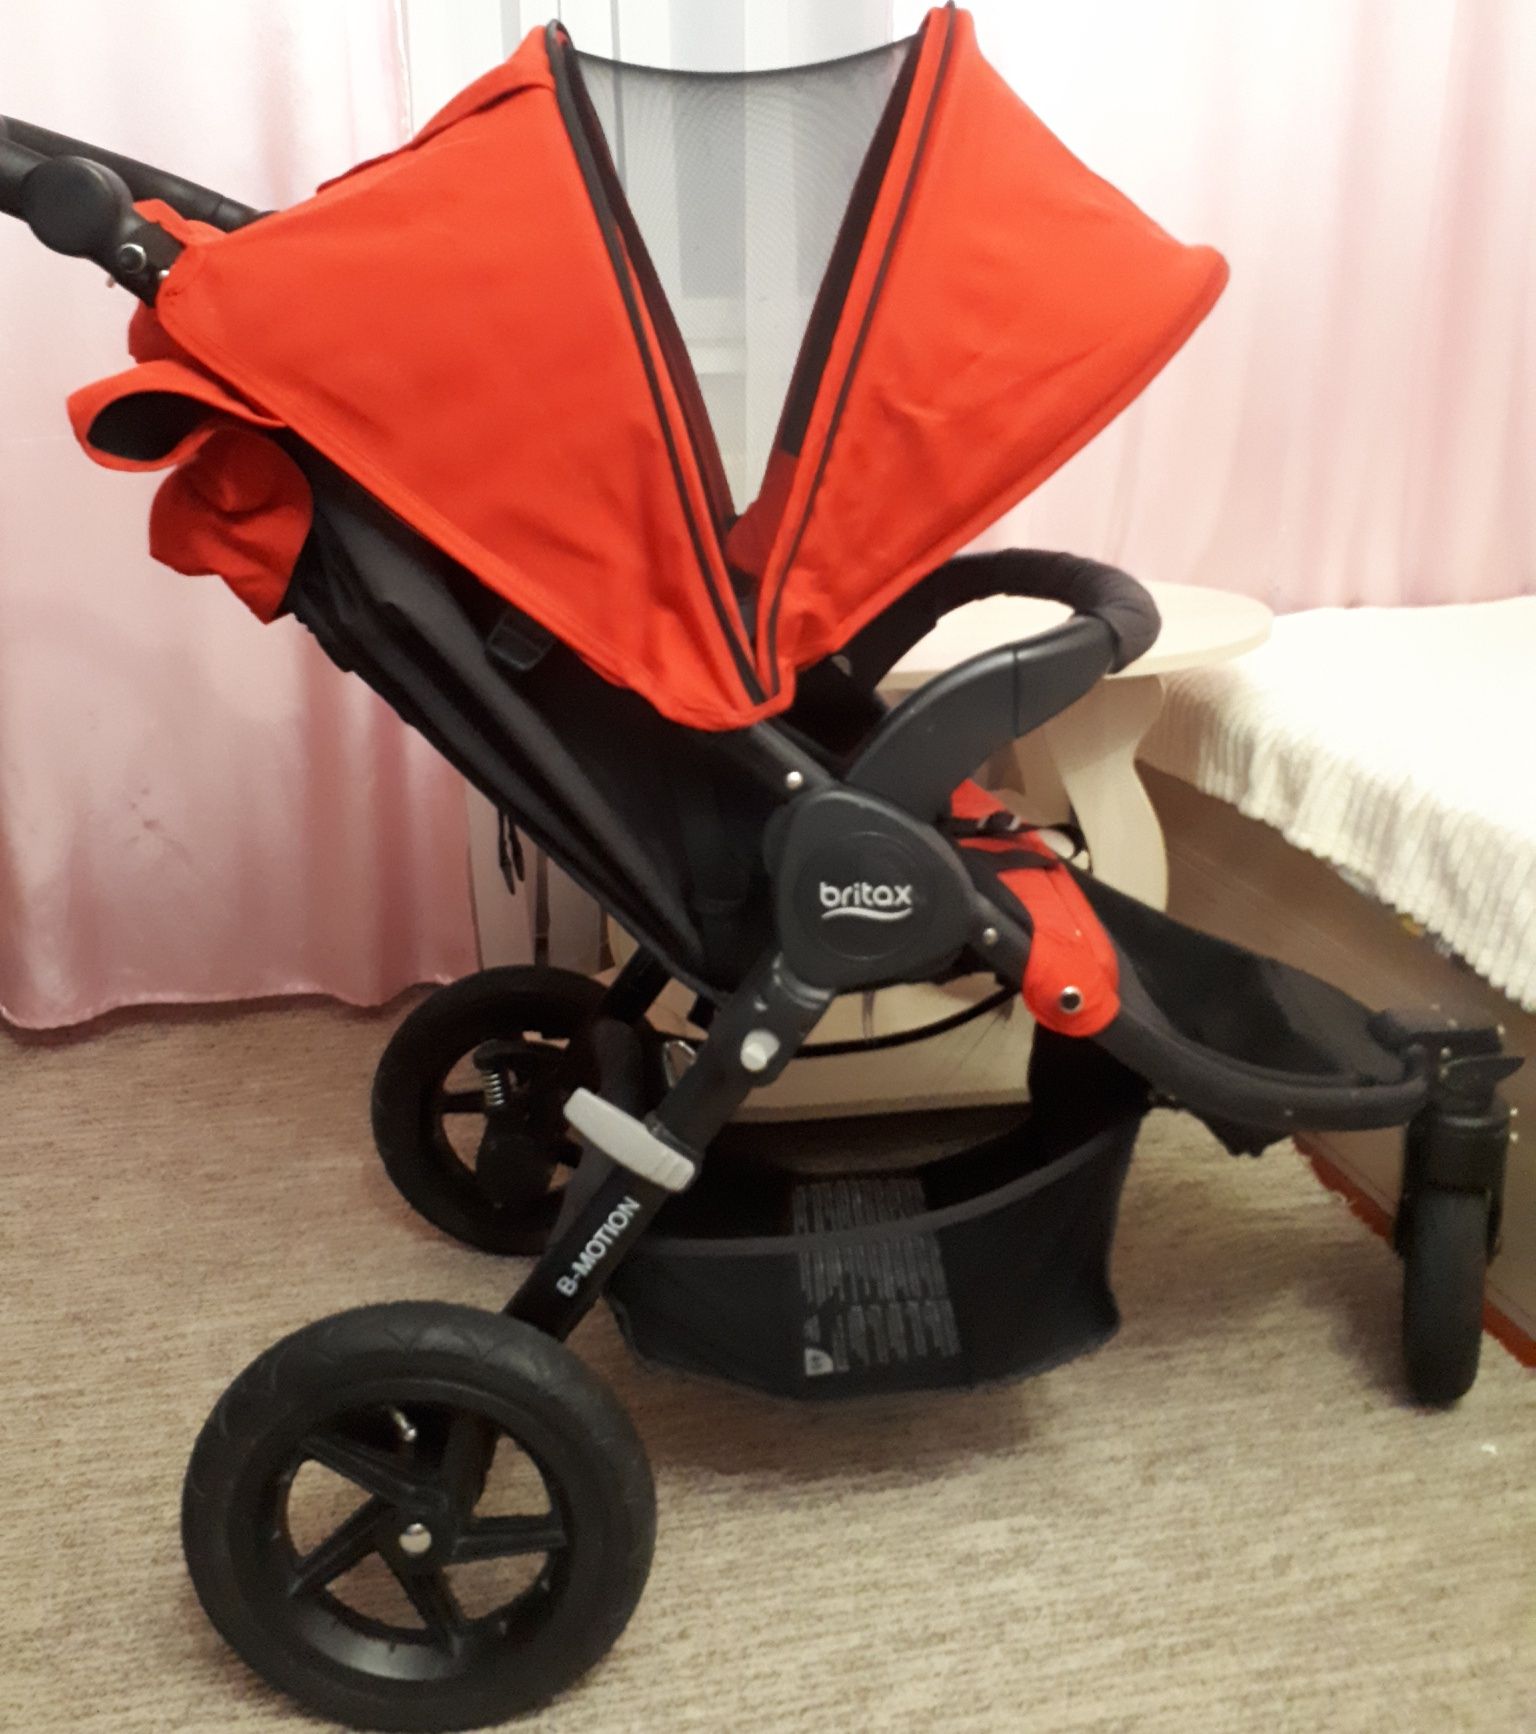 Дитяча  прогулочна коляска Britax B Motion-3 червоного кольору.